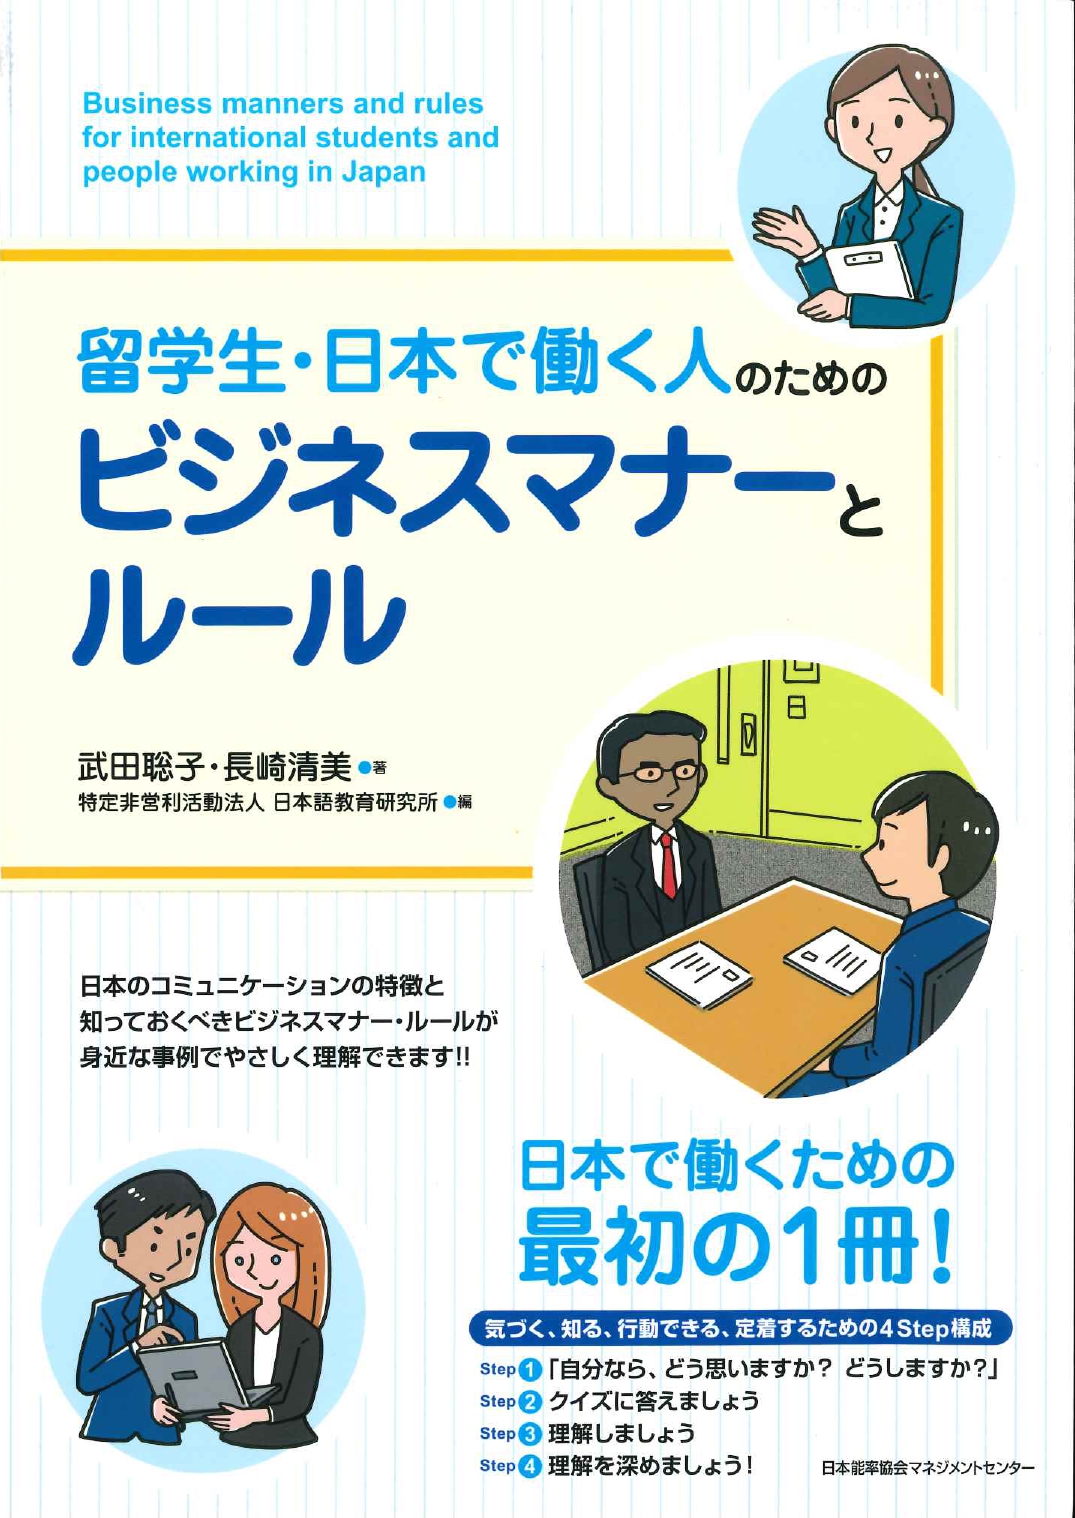 留学生 日本で働く人のためのビジネスマナーとルール 世界の日本語教育に貢献するにほんごの凡人社